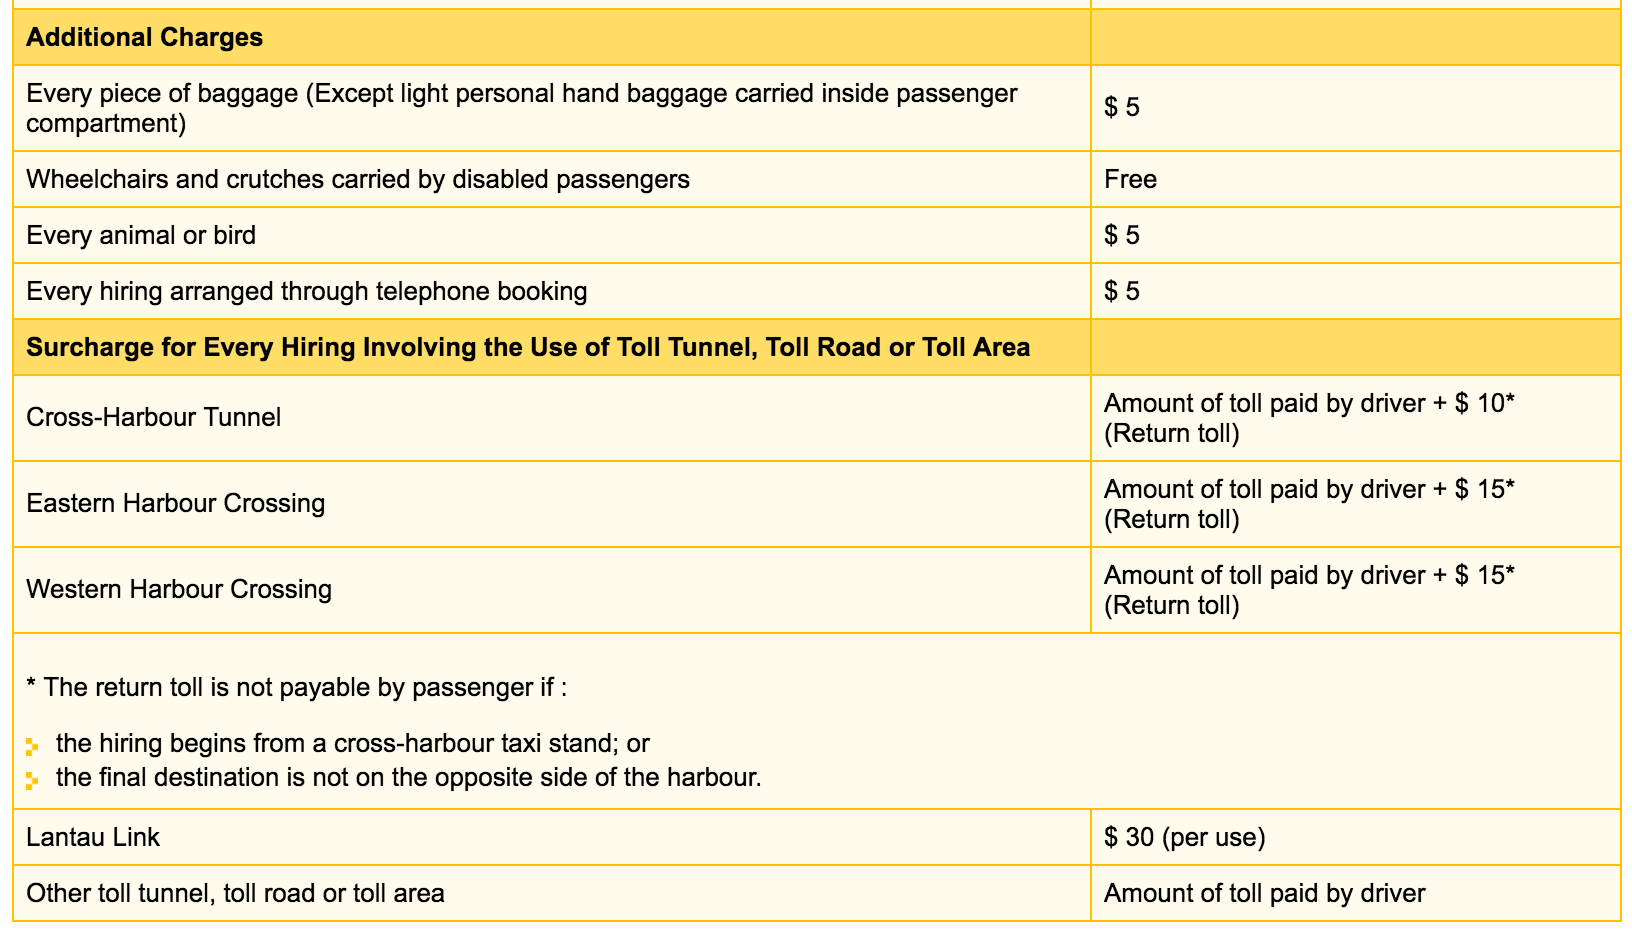 Сайт гонконгского такси. Пассажиры платят дополнительные сборы за проезд по туннелям и провоз багажа